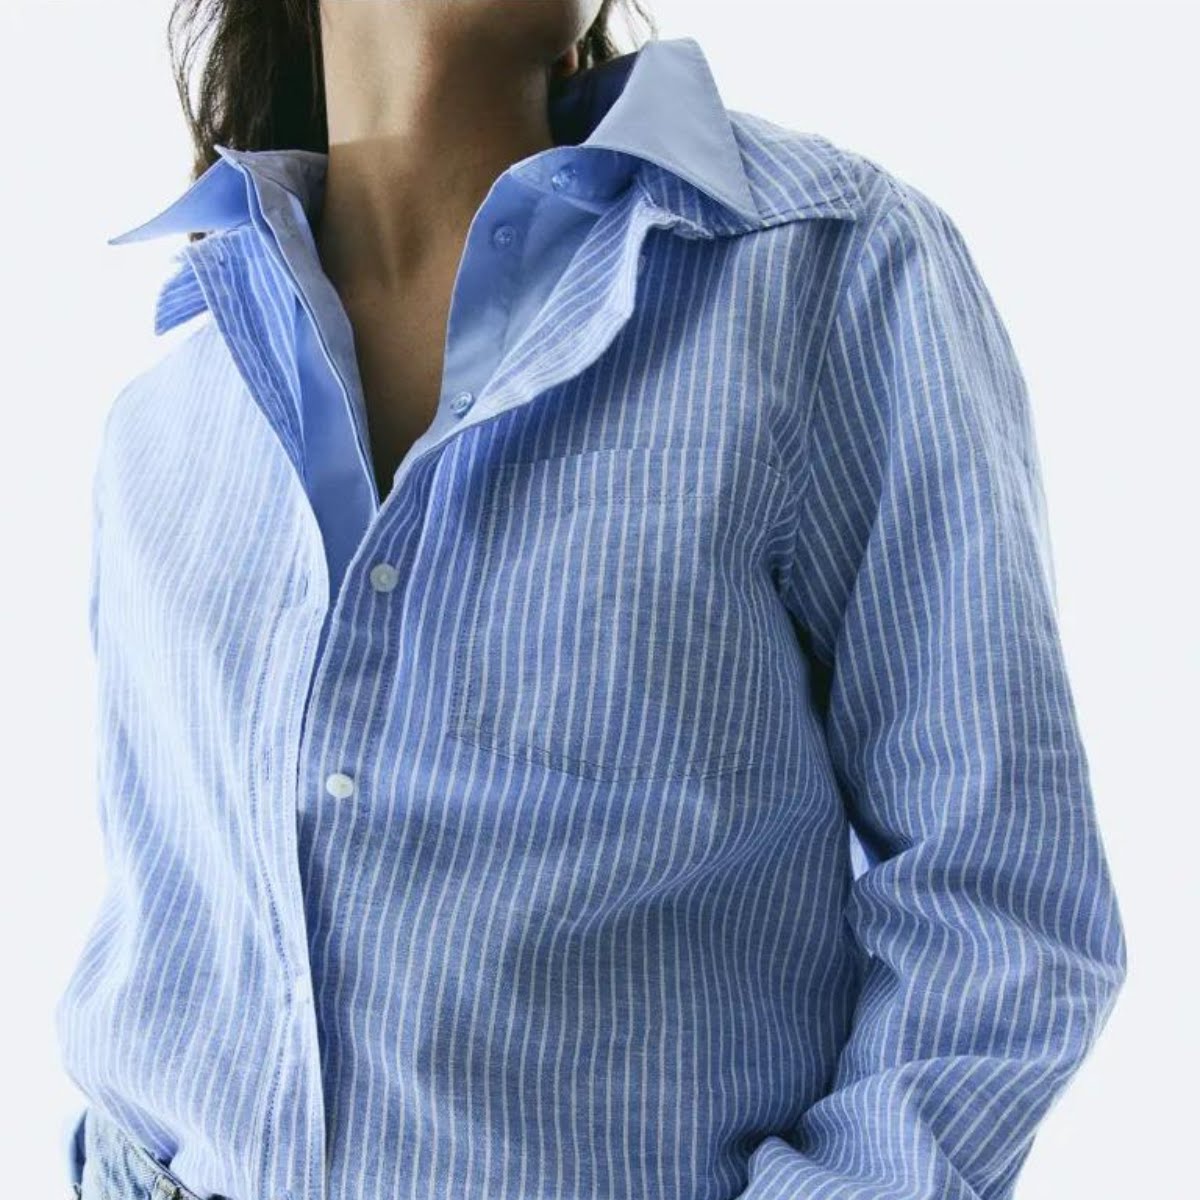 H&M Linen Blend Shirt, €19.99